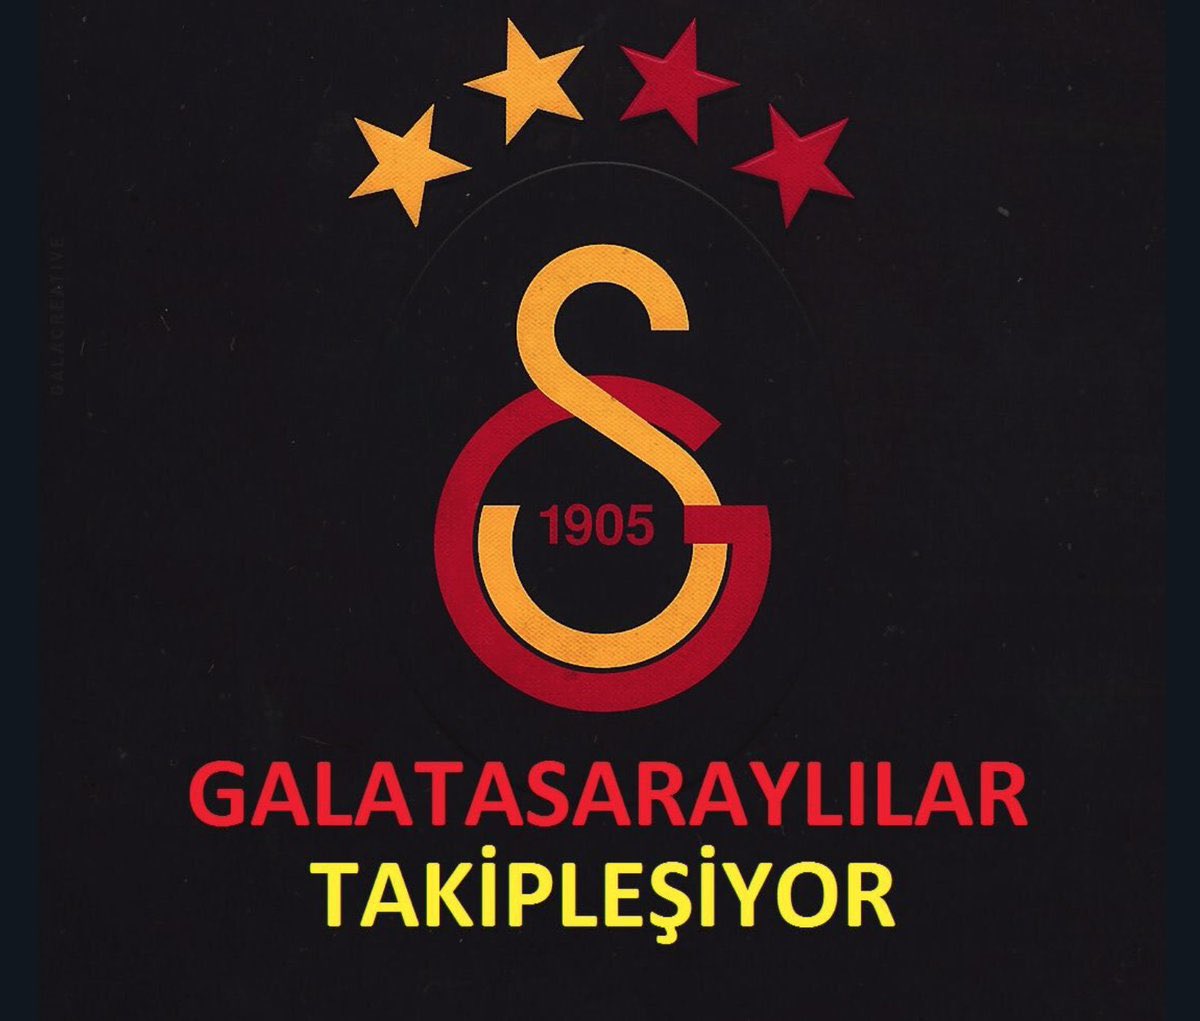 Galatasaray ailem, arkadaşımız @Melekkerem1905 orjinal hesabında sorun var bu yeni hesabı takip edelim🔥💛❤🦁